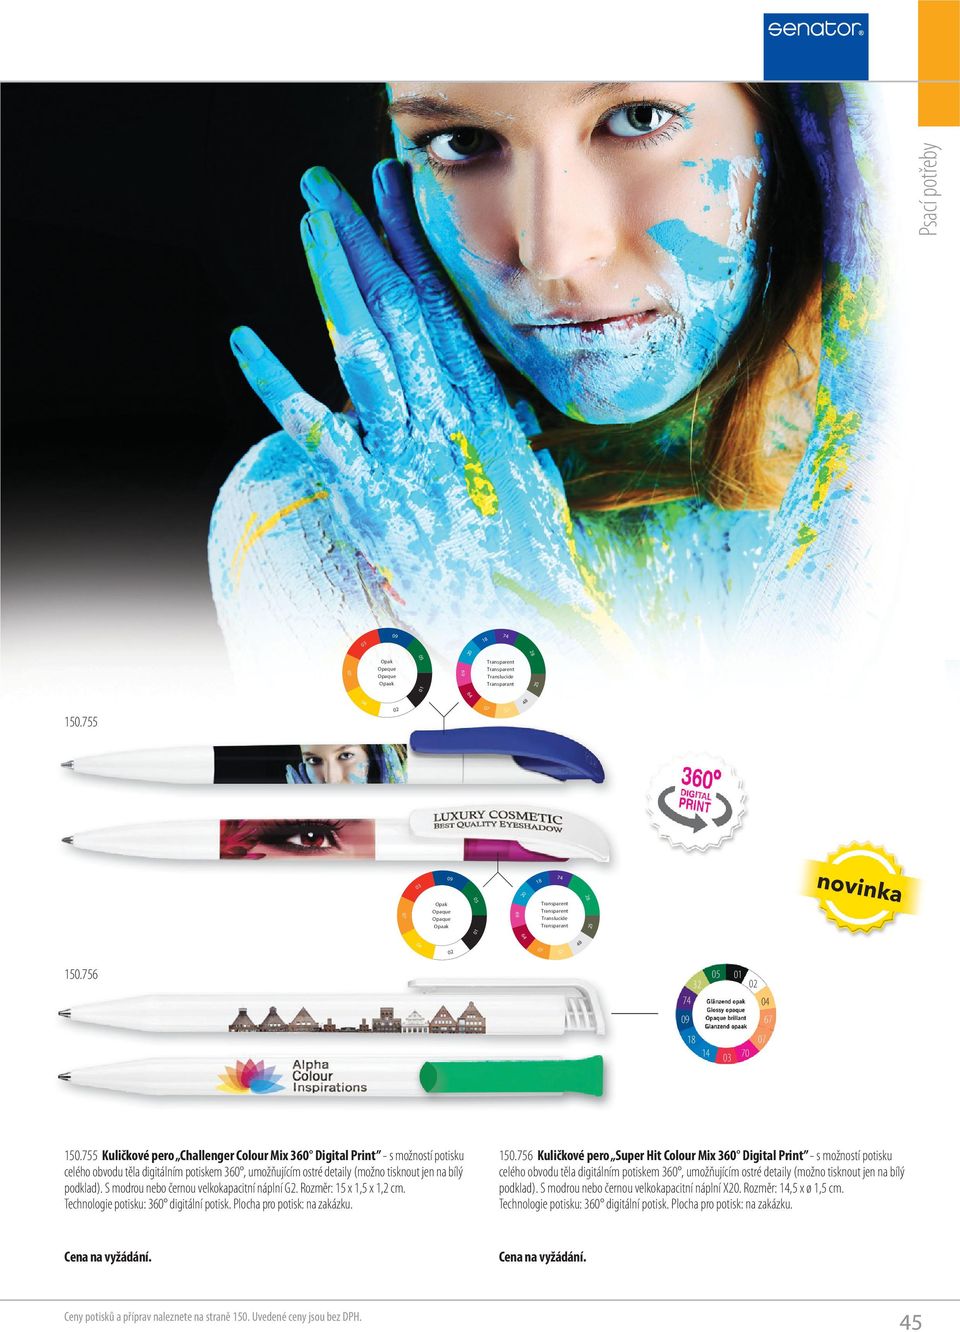 755 Kuličkové pero Challenger Colour Mix 360 Digital Print - s možností potisku celého obvodu těla digitálním potiskem 360, umožňujícím ostré detaily (možno tisknout jen na bílý podklad).